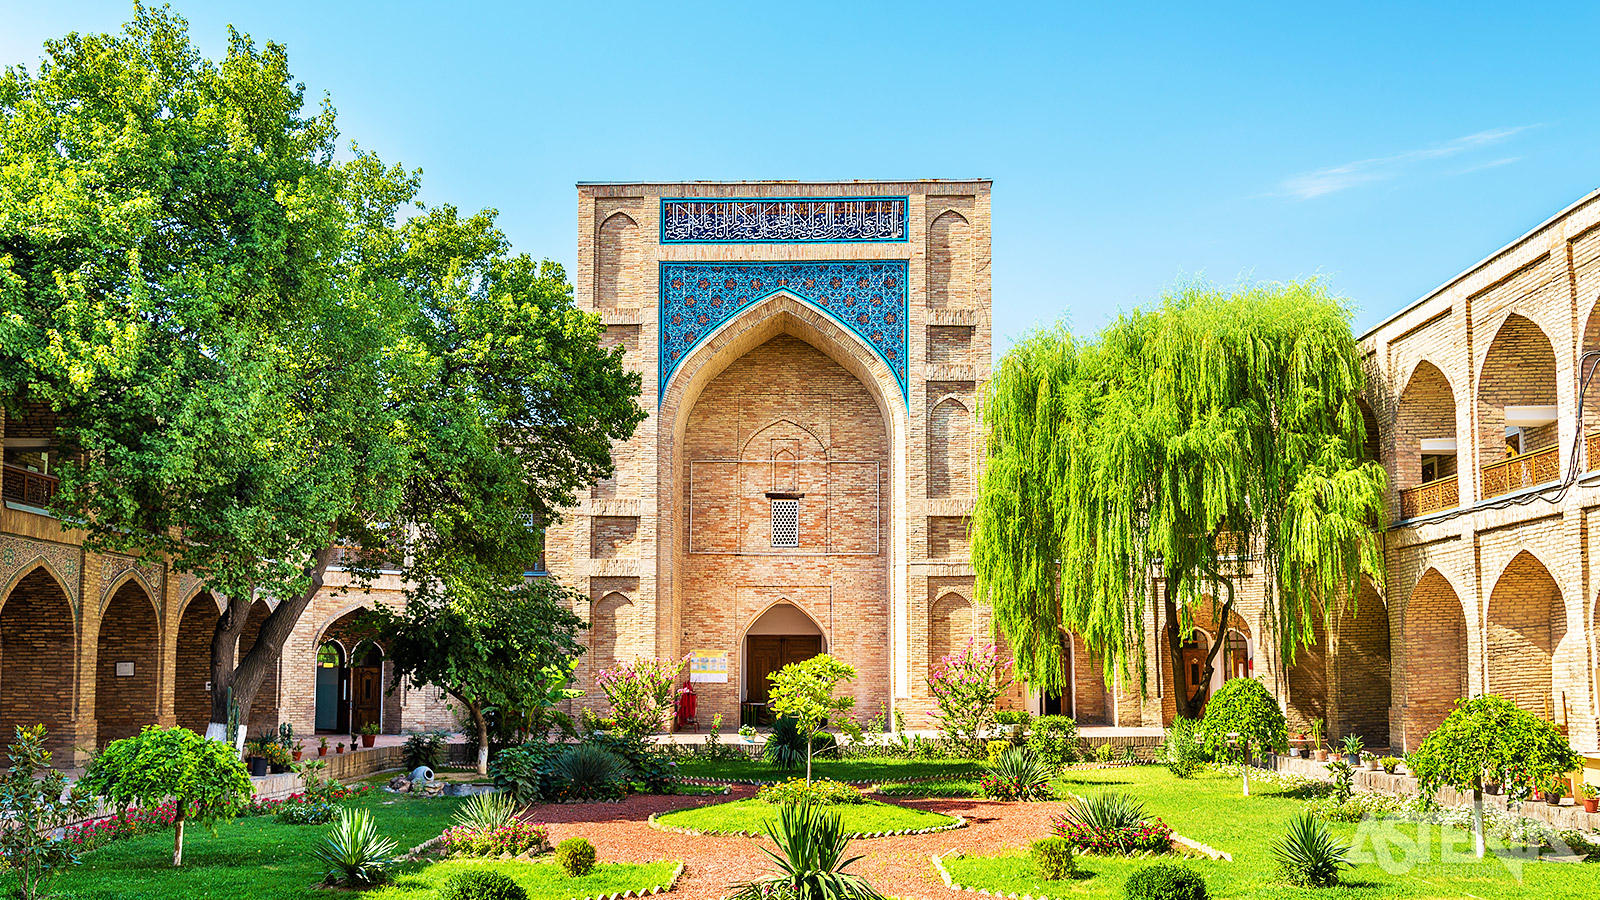 Een andere parel in Tasjkent is de Kukeldash Madrassah uit  1570 en opgebouwd uit gele bakstenen